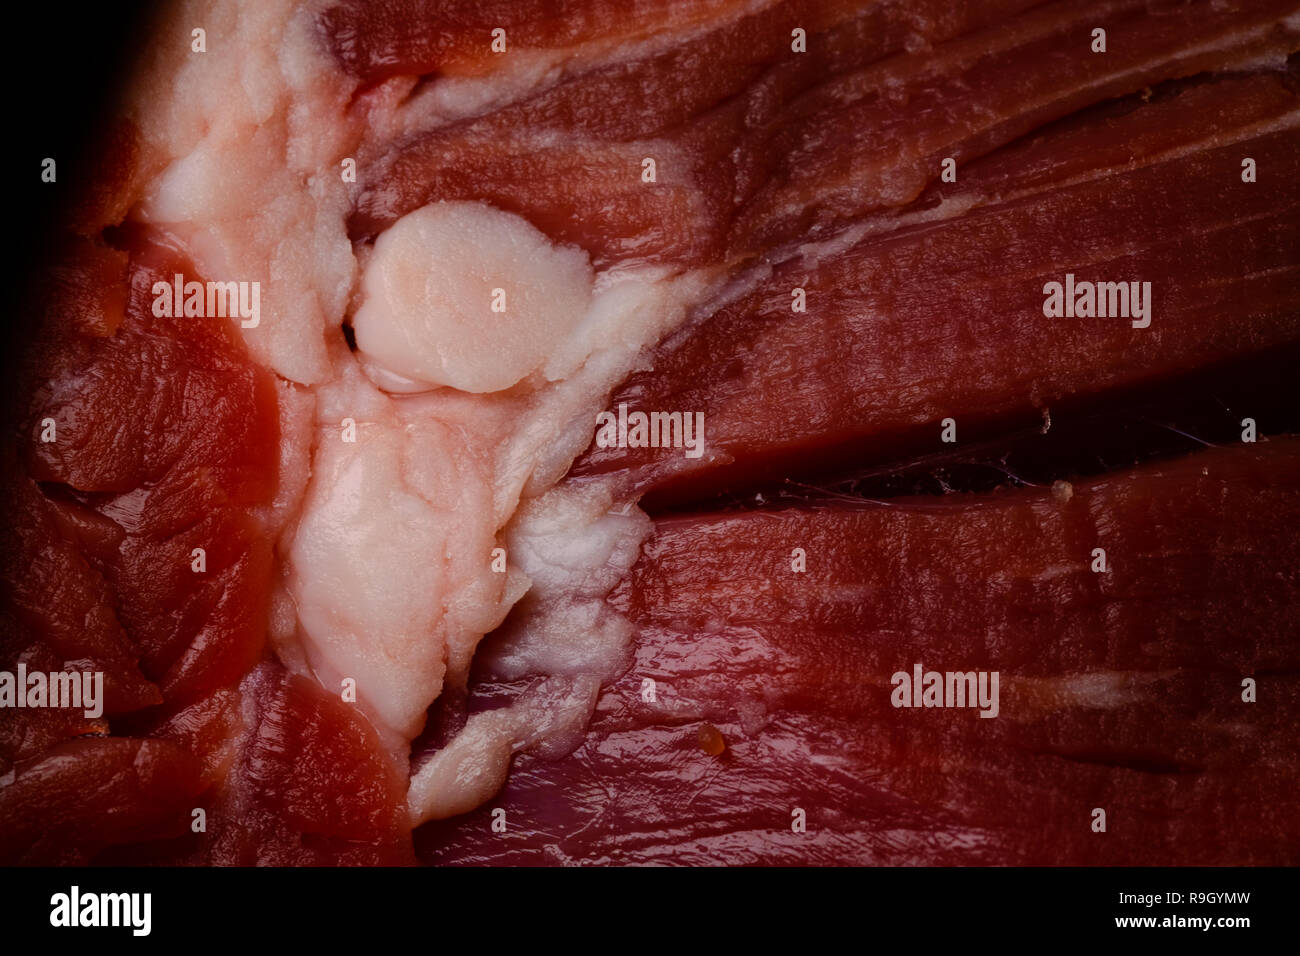 Red raw di carne di manzo con frammento di grasso bianco, macro close up, la cottura e il concetto di nutrizione Foto Stock